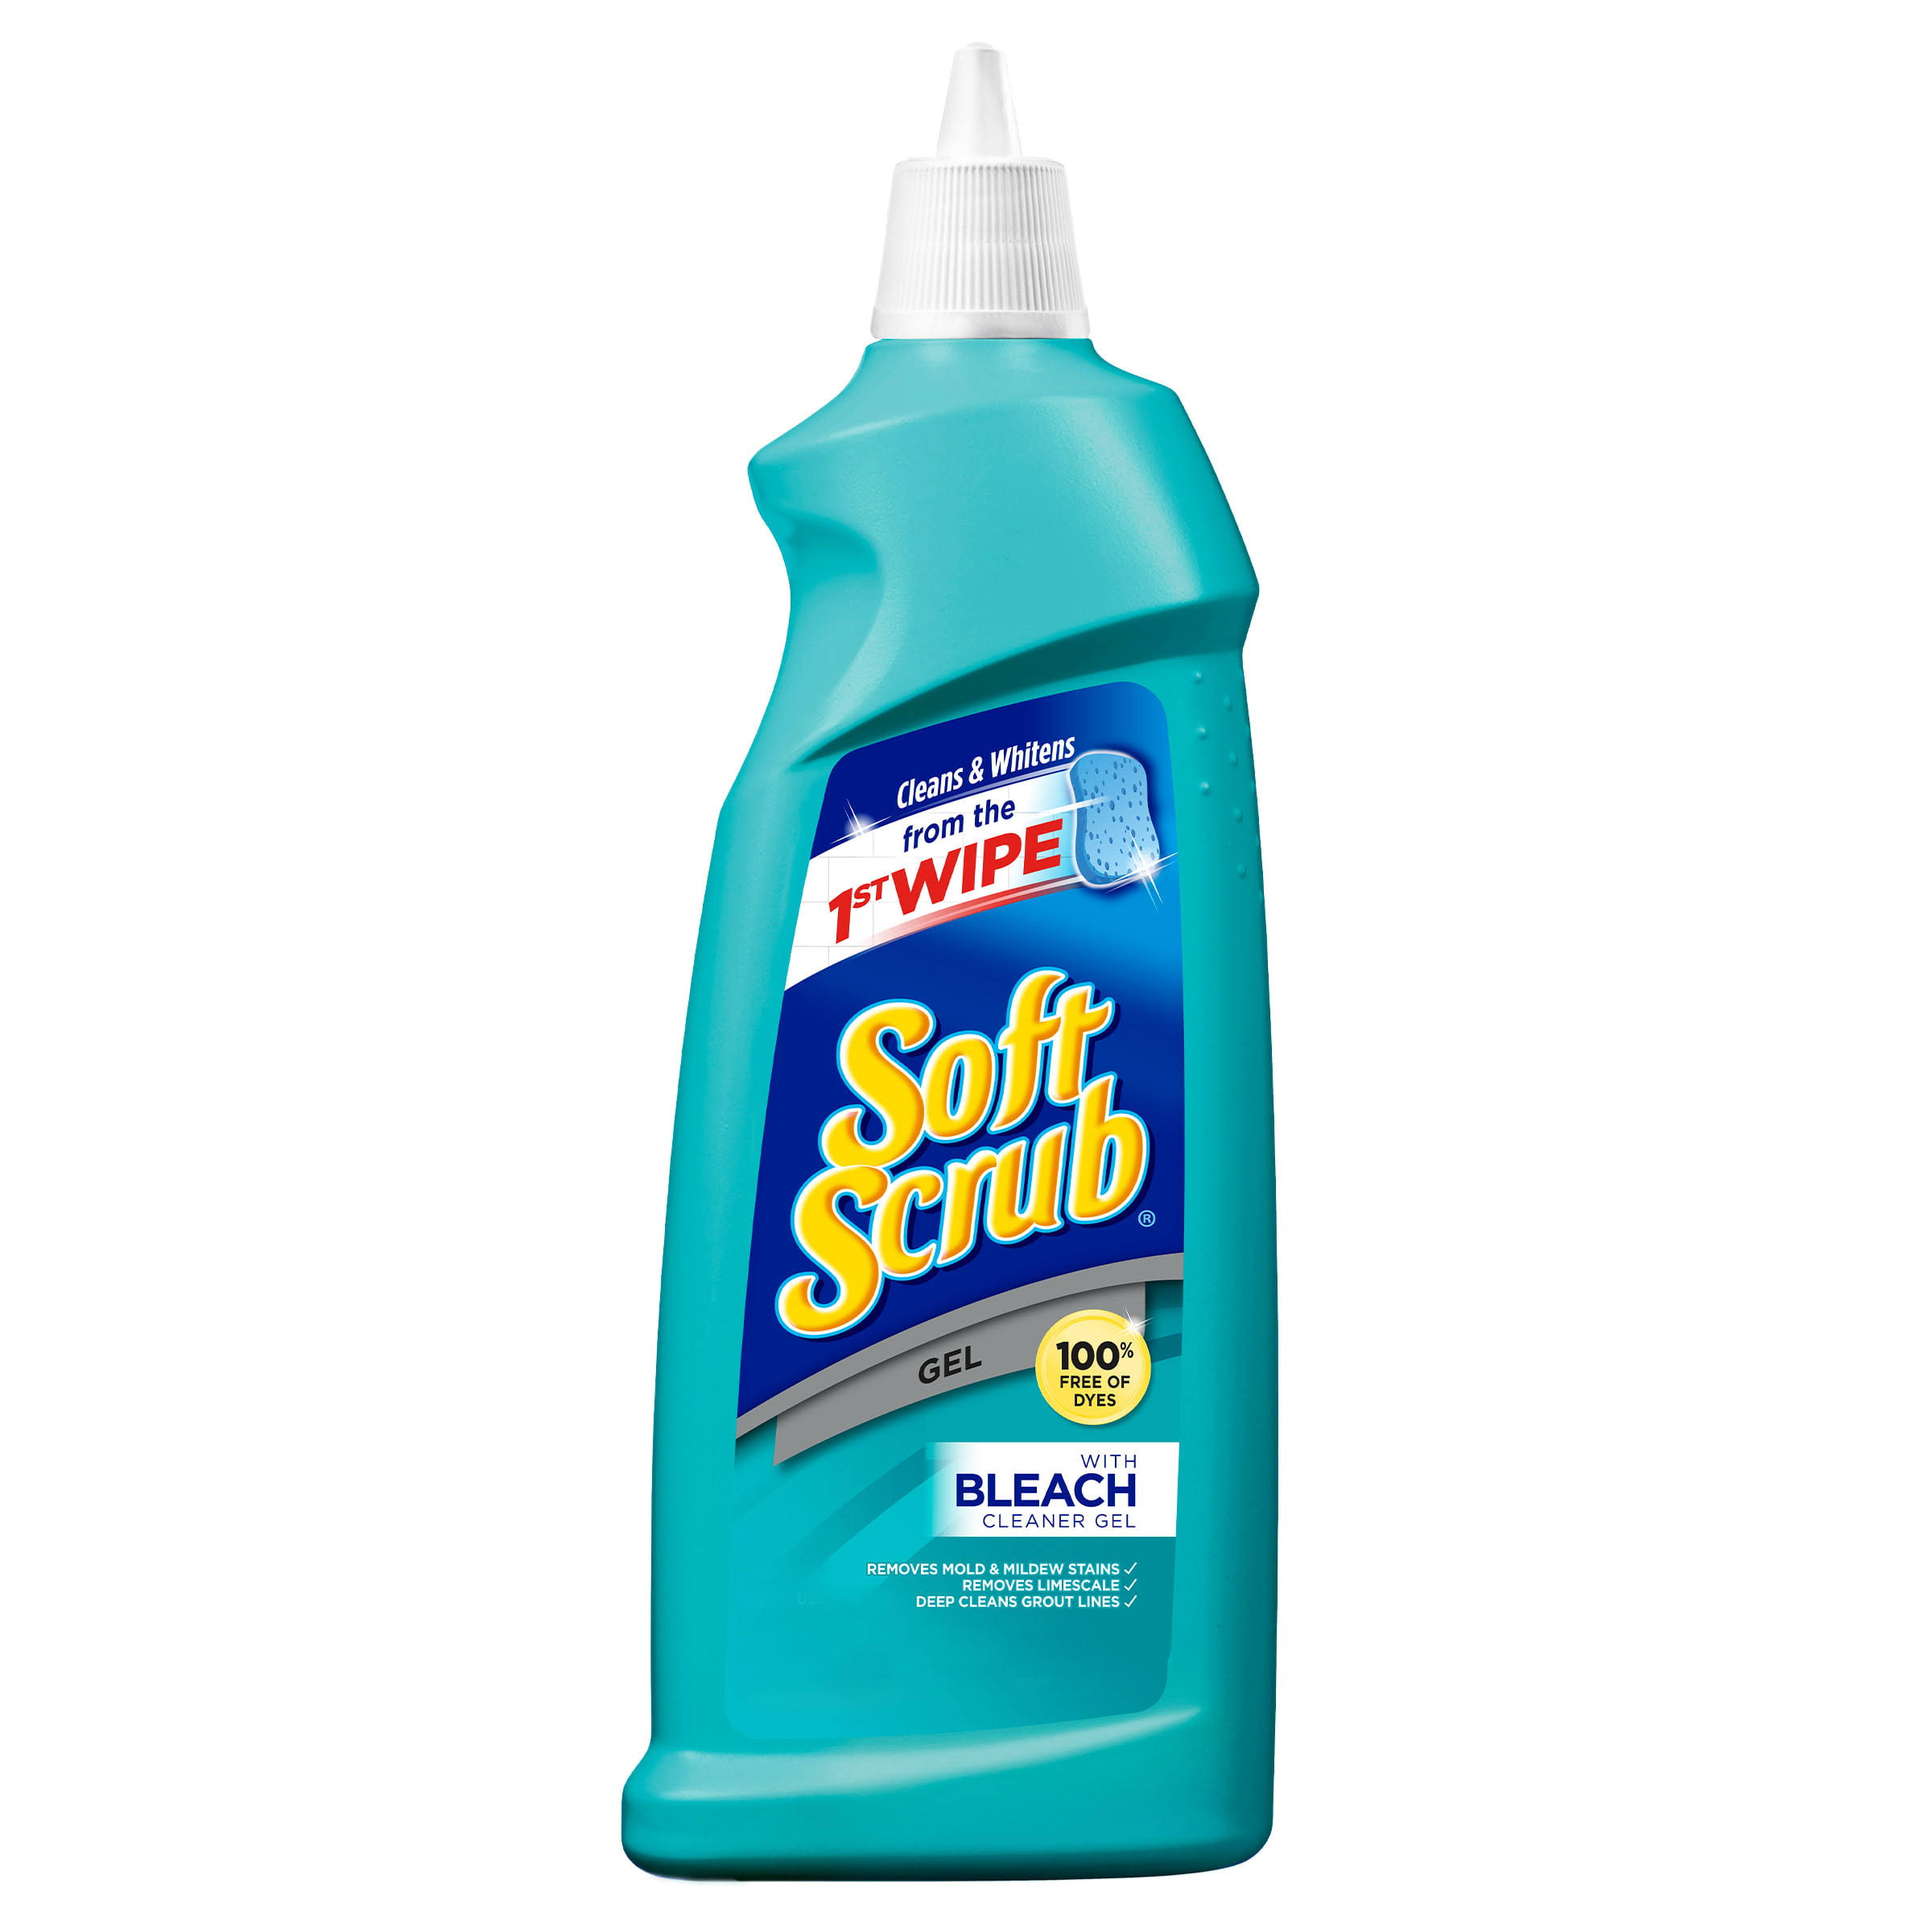 Soft Scrub Gel Cleanser - with Bleach, 28.6oz